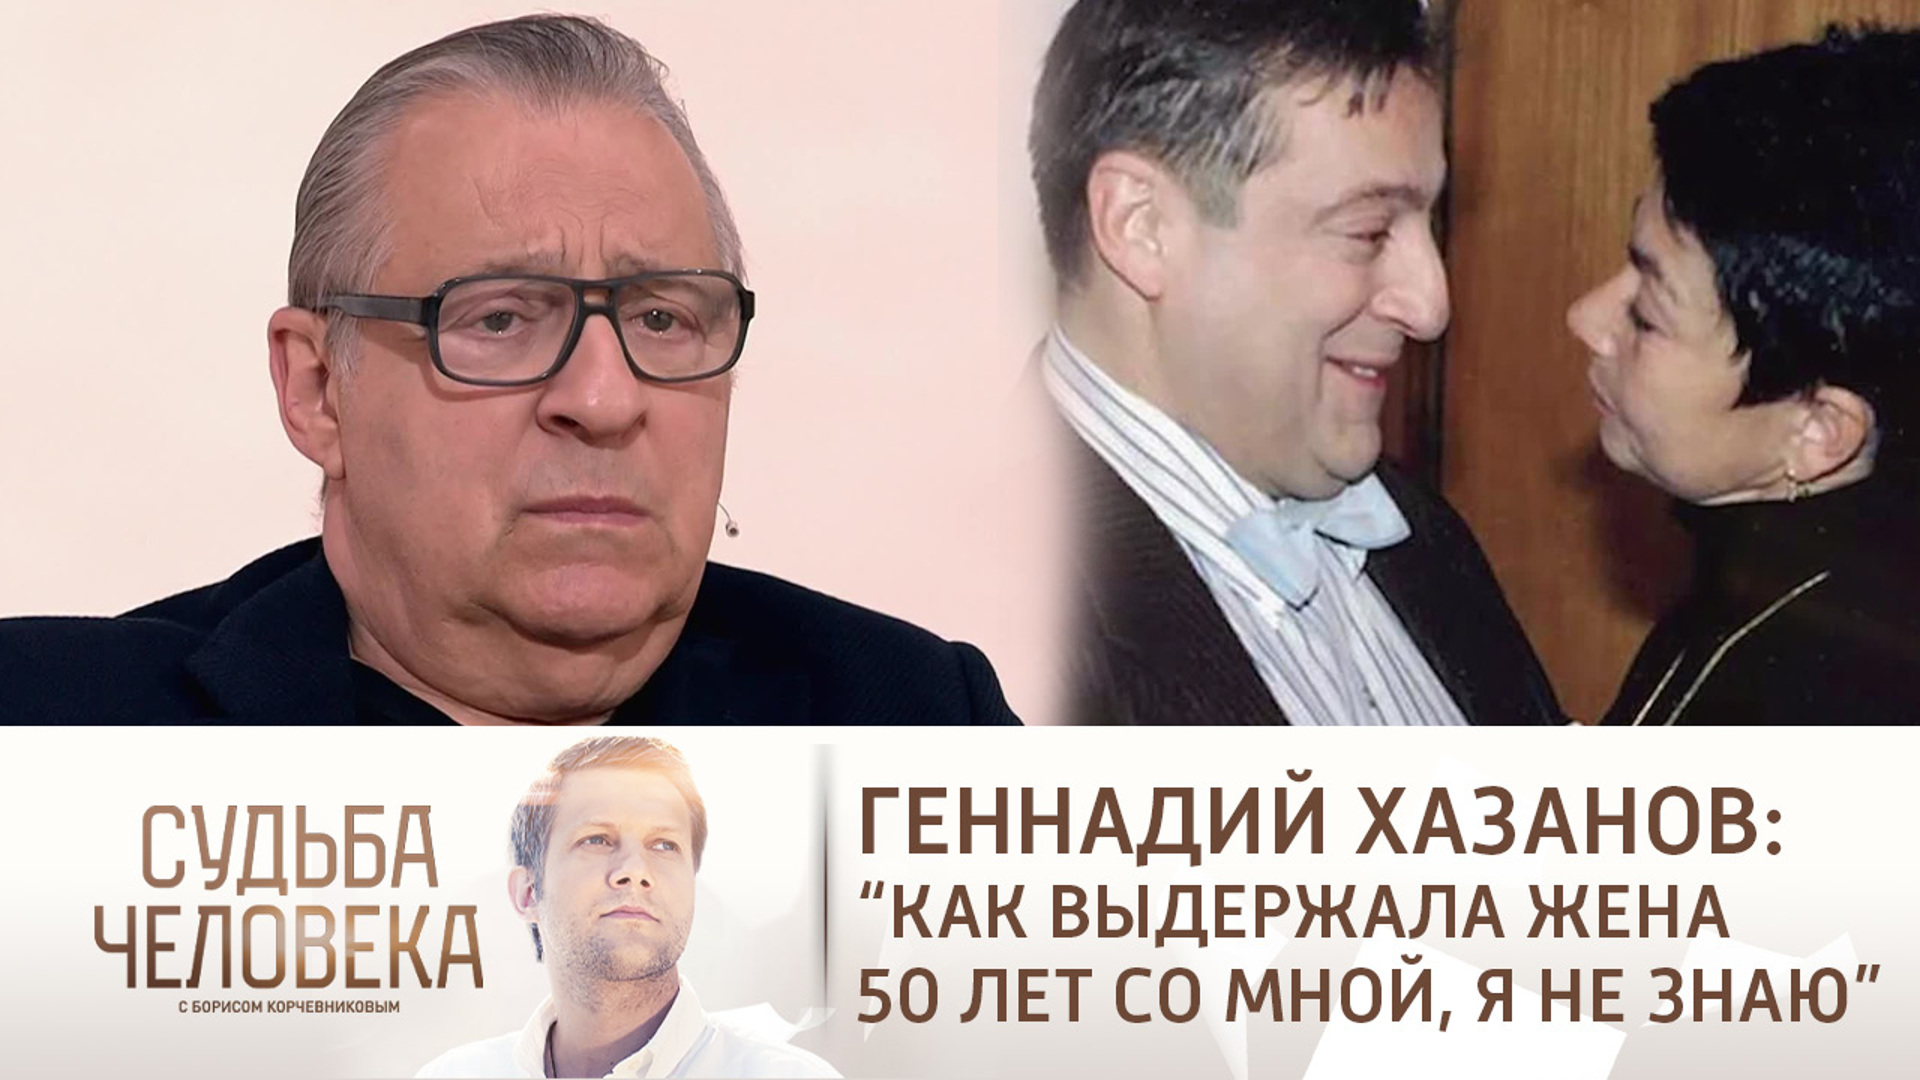 Судьба человека с Борисом Корчевниковым Владимир Жириновский